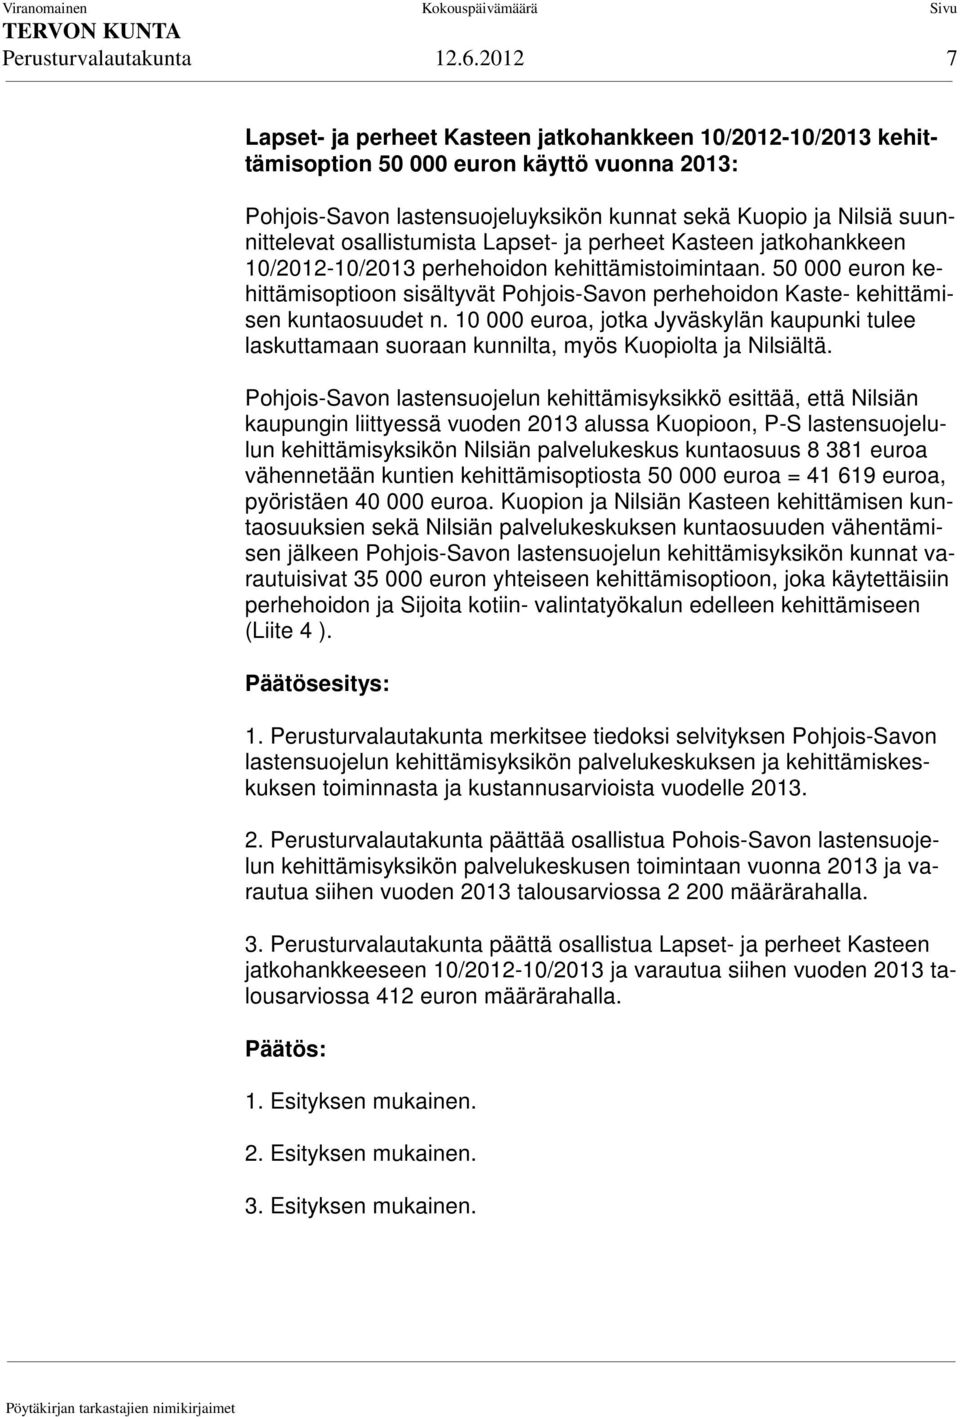 osallistumista Lapset- ja perheet Kasteen jatkohankkeen 10/2012-10/2013 perhehoidon kehittämistoimintaan.